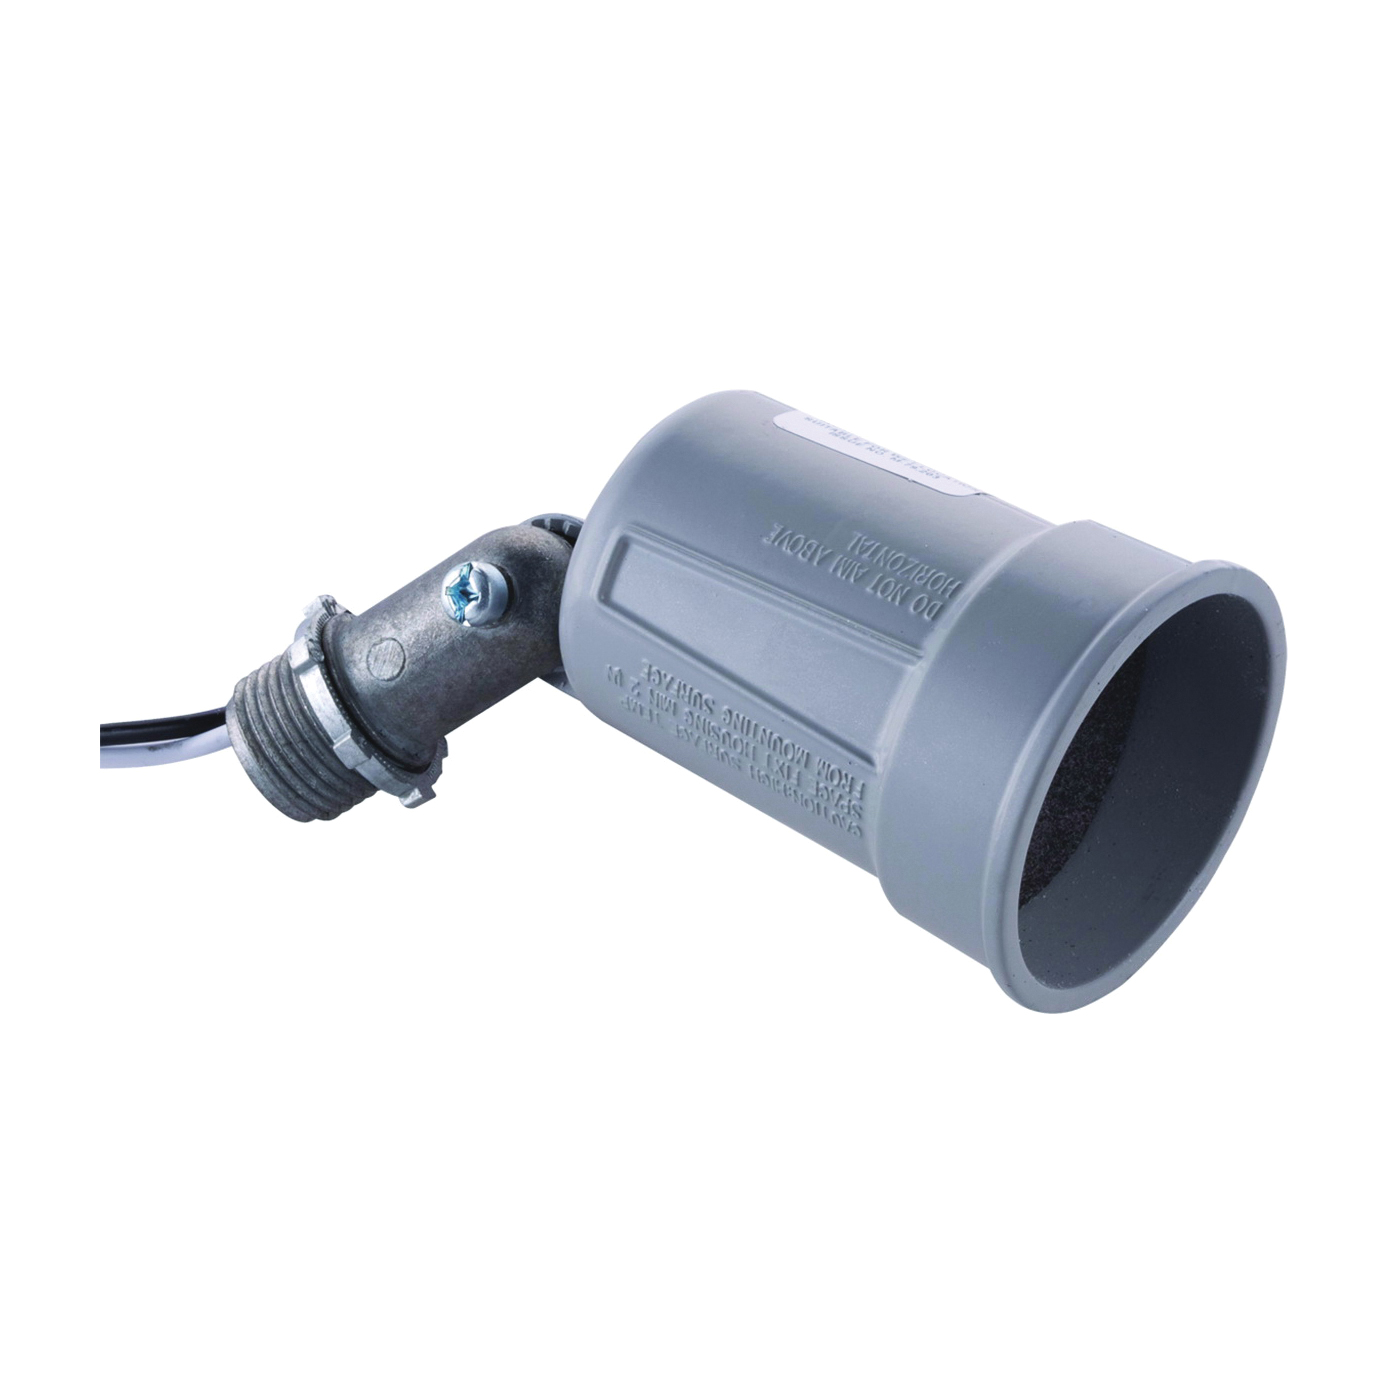 5606-5 Lamp Holder, 120 V, 75 to 150 W, Gray